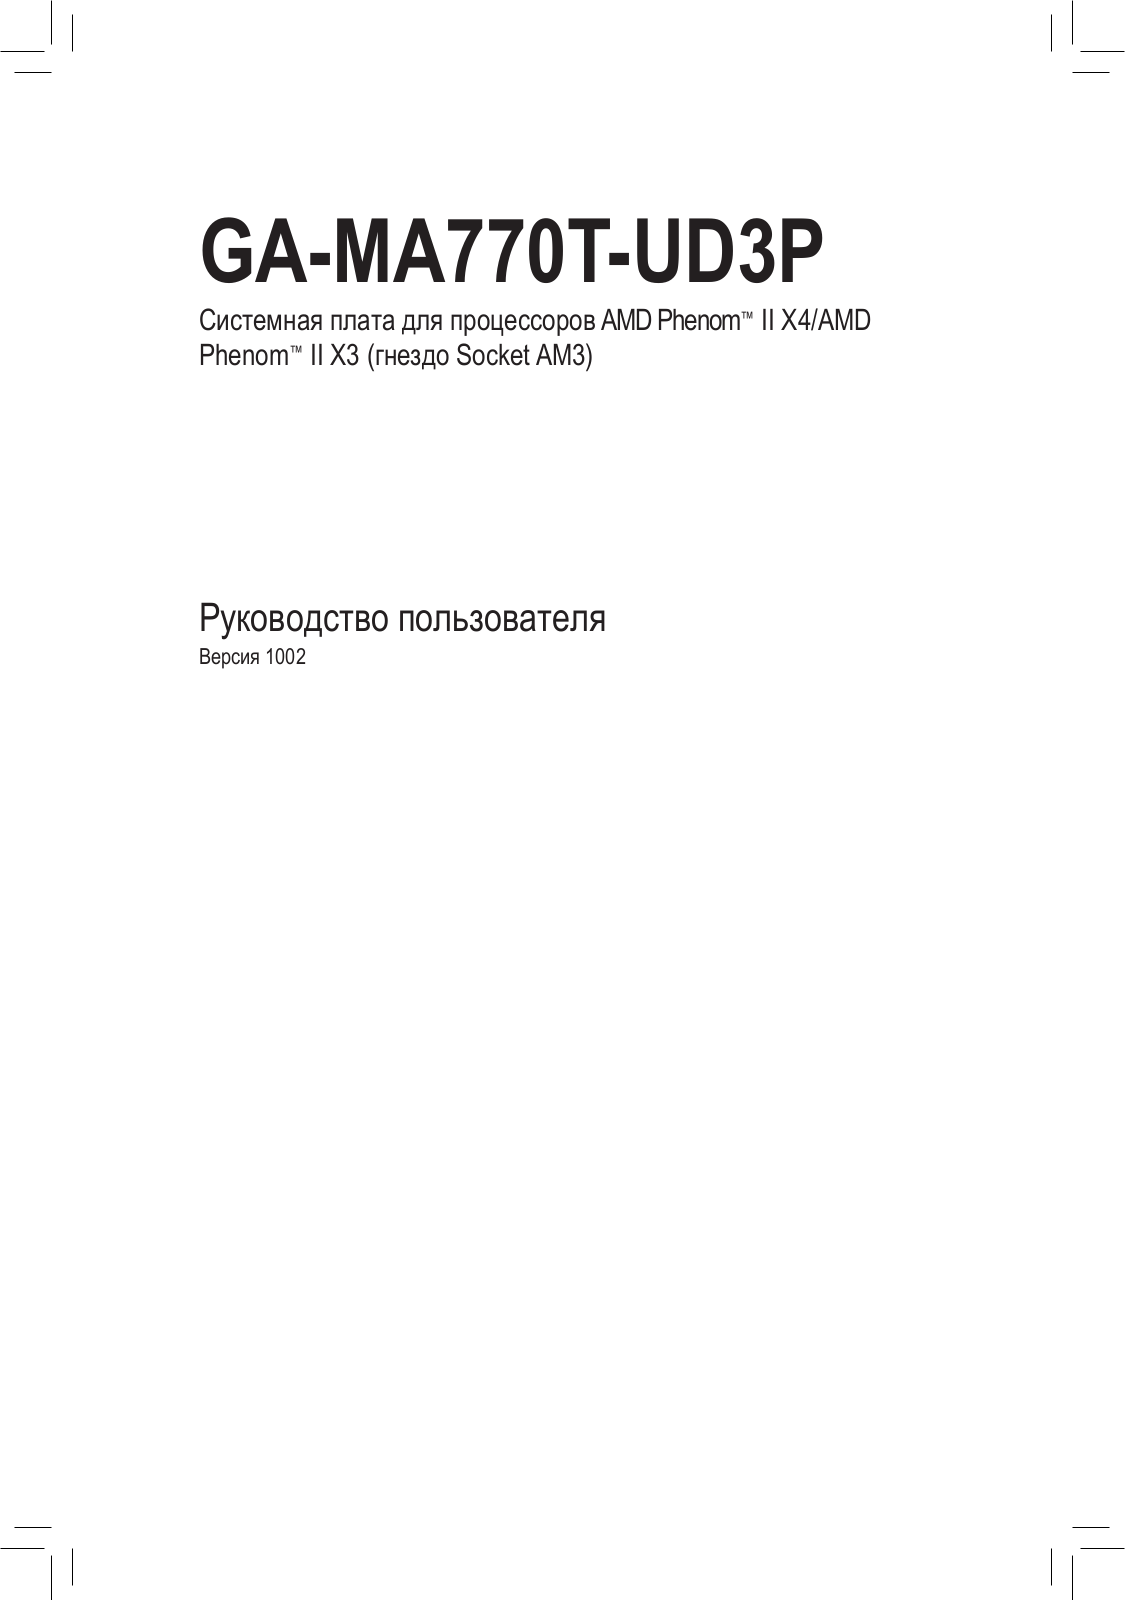 Gigabyte GA-MA770T-UD3 (rev. 1.0), GA-MA770T-UD3P (rev. 1.0) User Manual